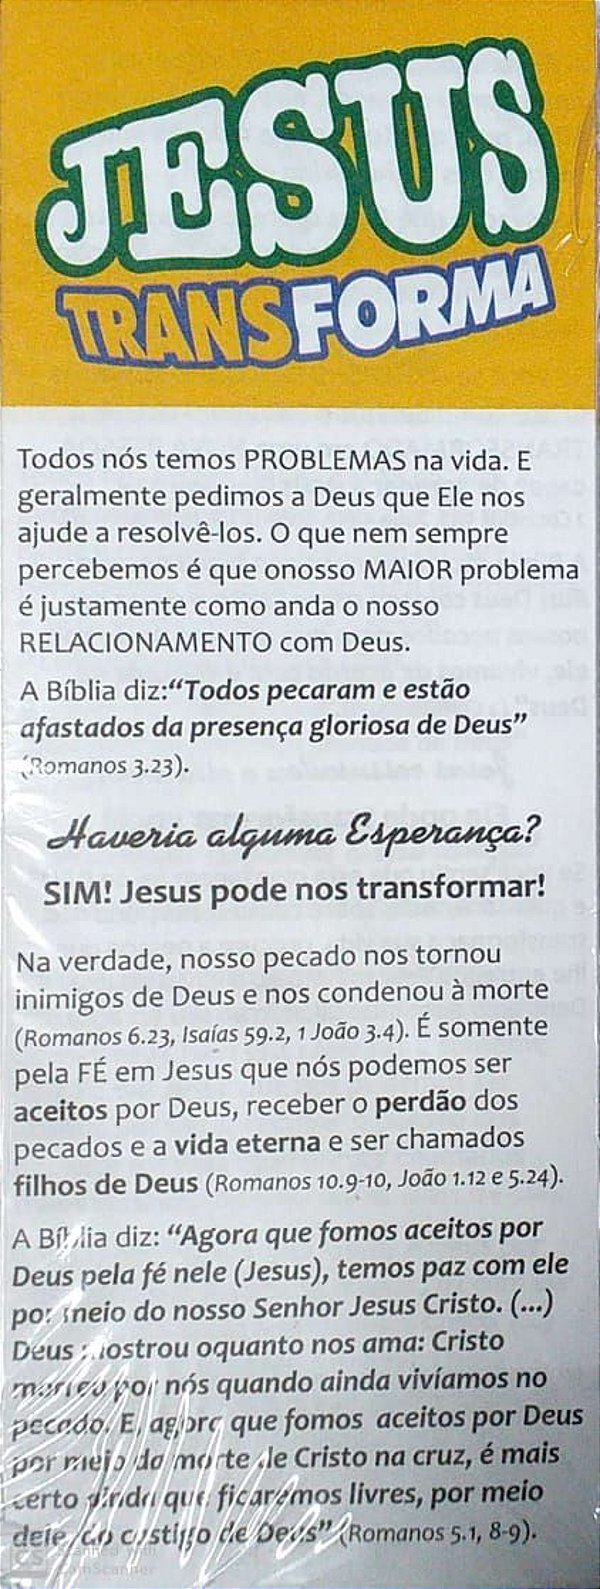 JESUS TRANSFORMA (CENTO) FOLHETO JMN